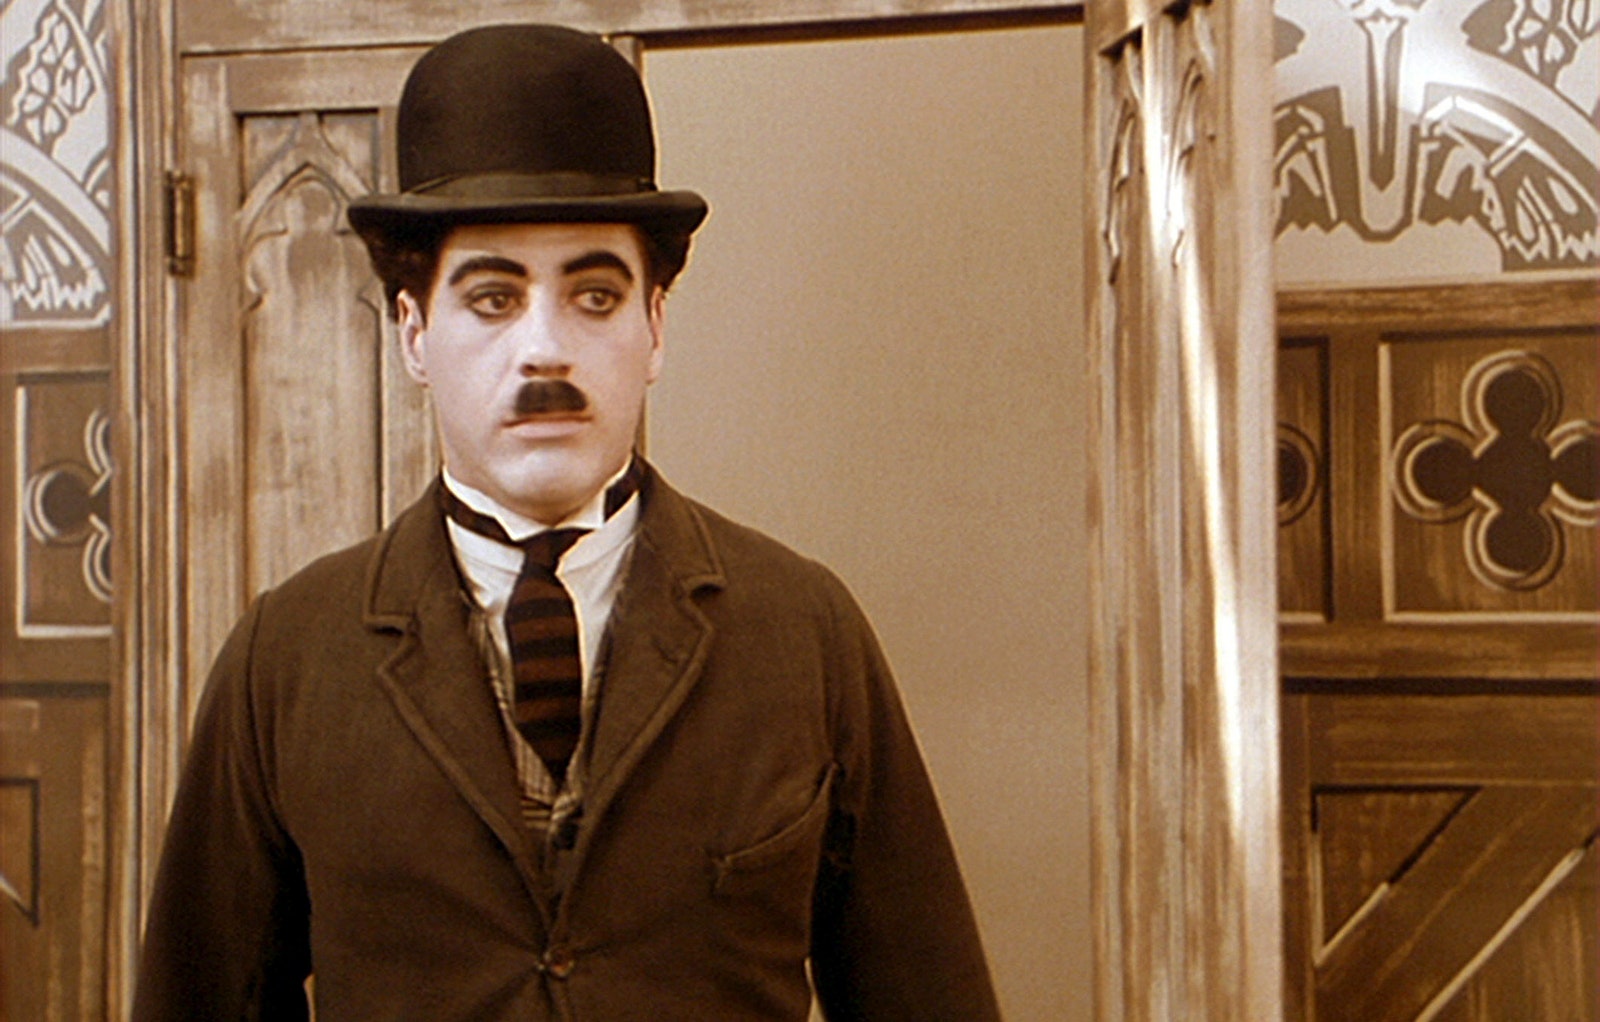 Robert Downey Jr. as Charlie Chaplin